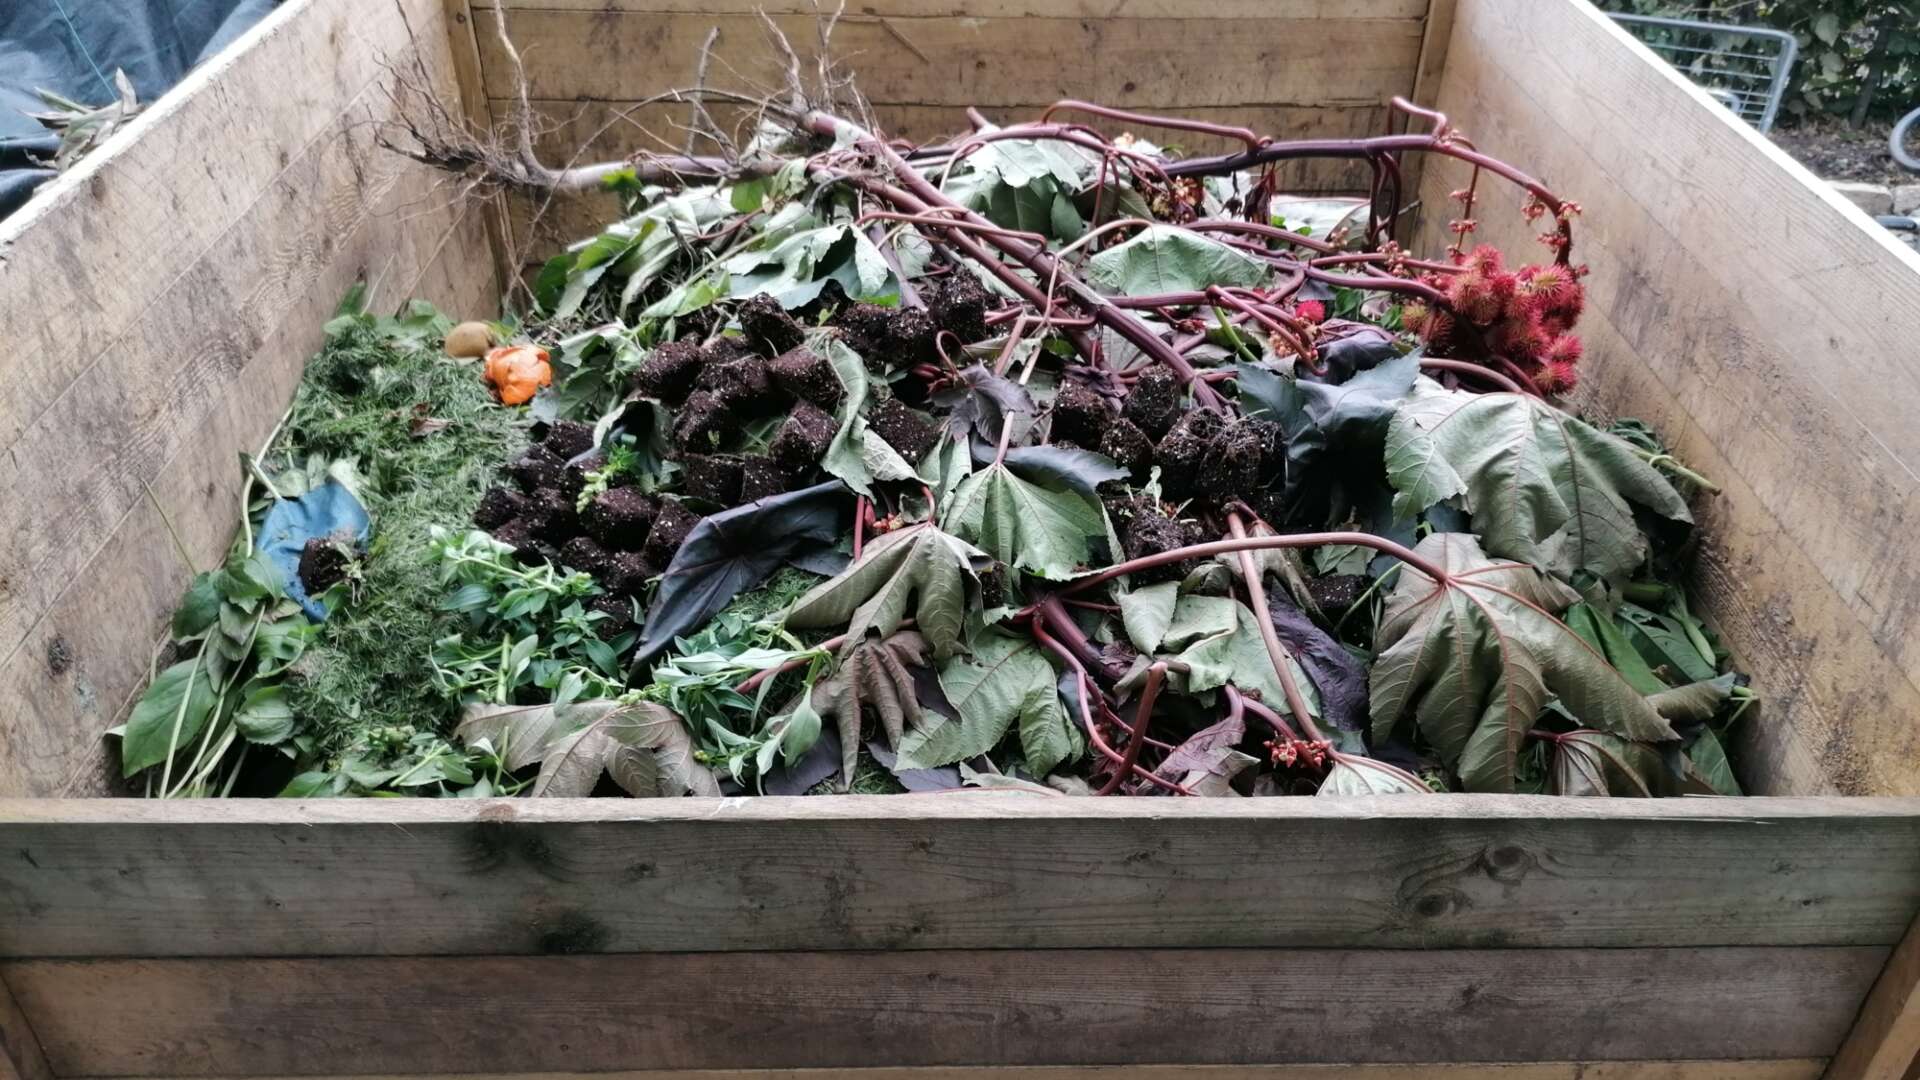 Garden Organic  Homemade compost bins